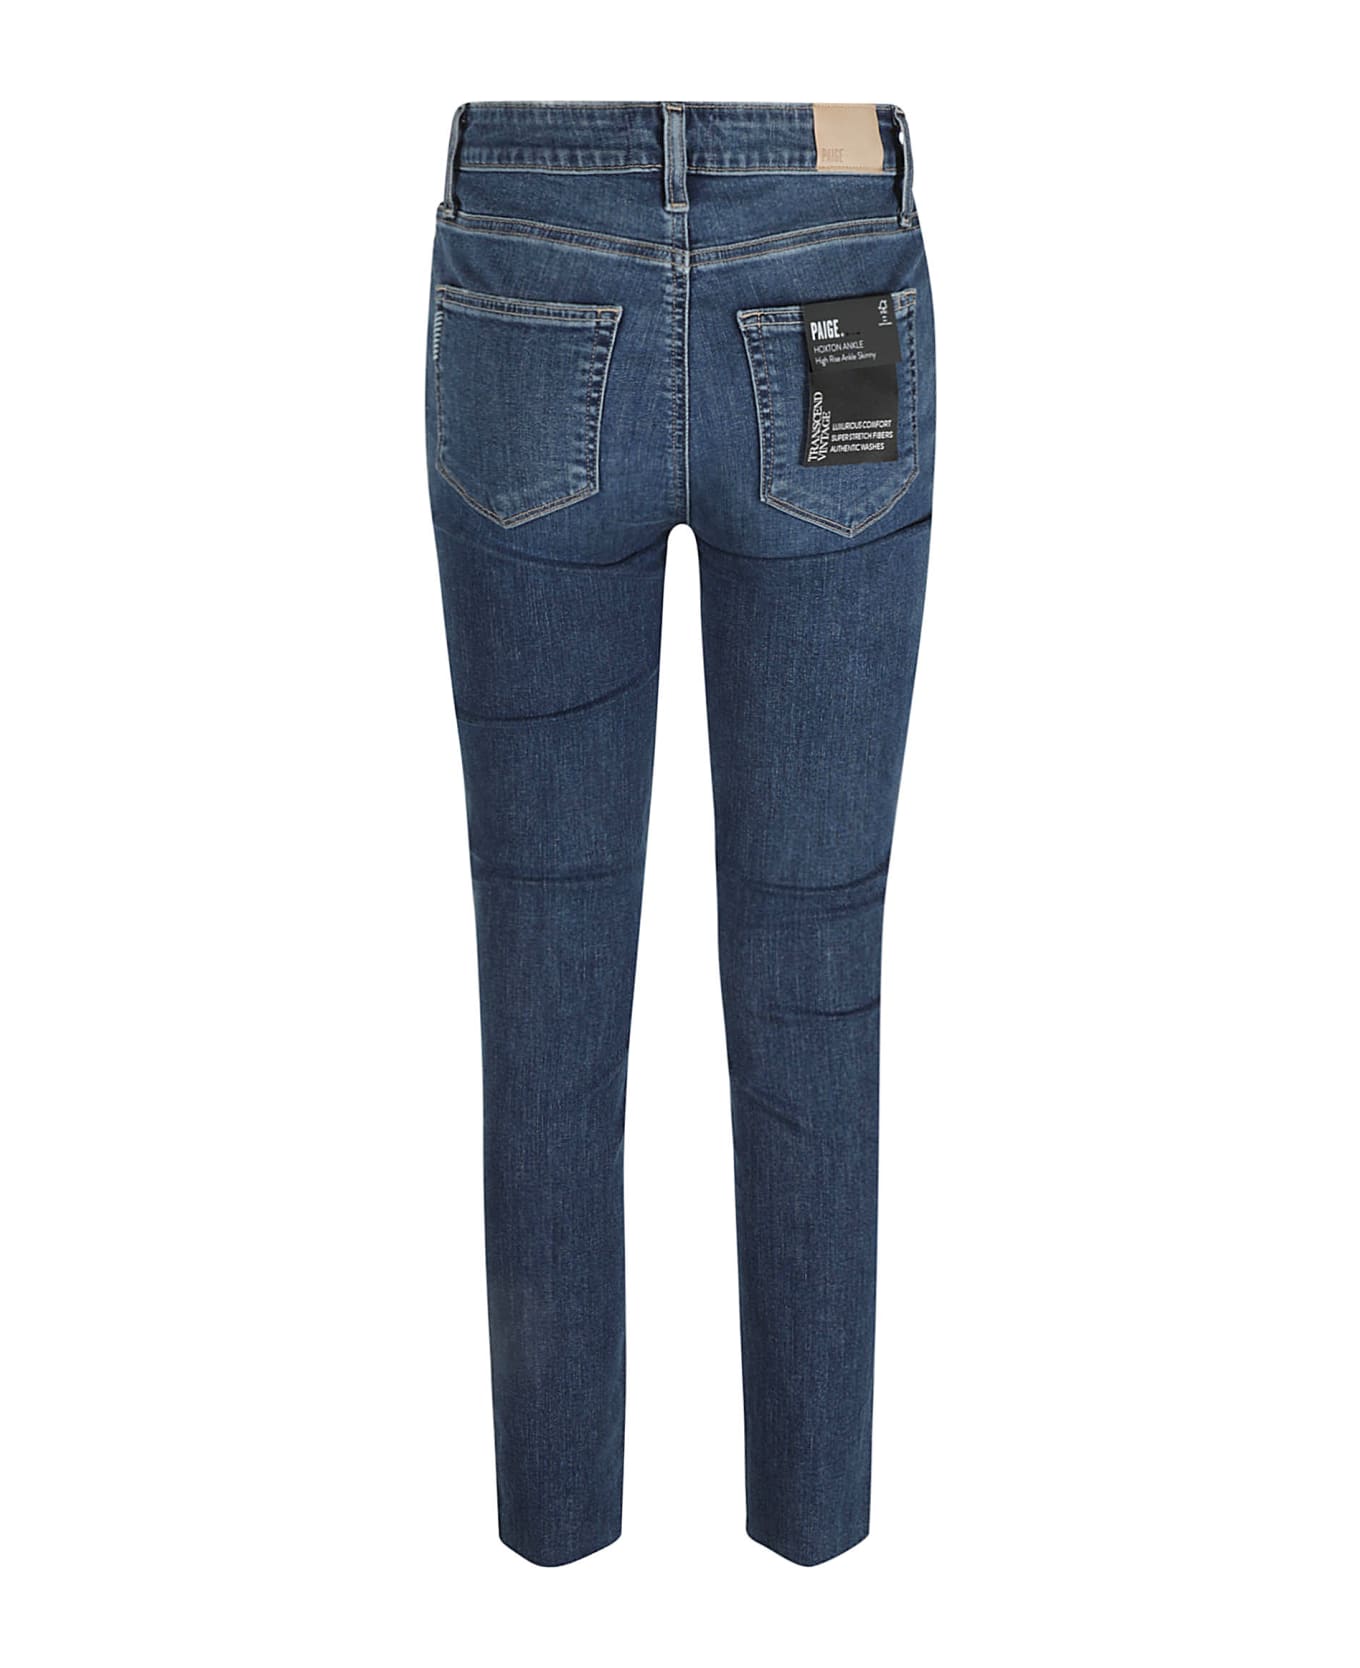 Paige Hoxton Ankle Jeans - Blu denim